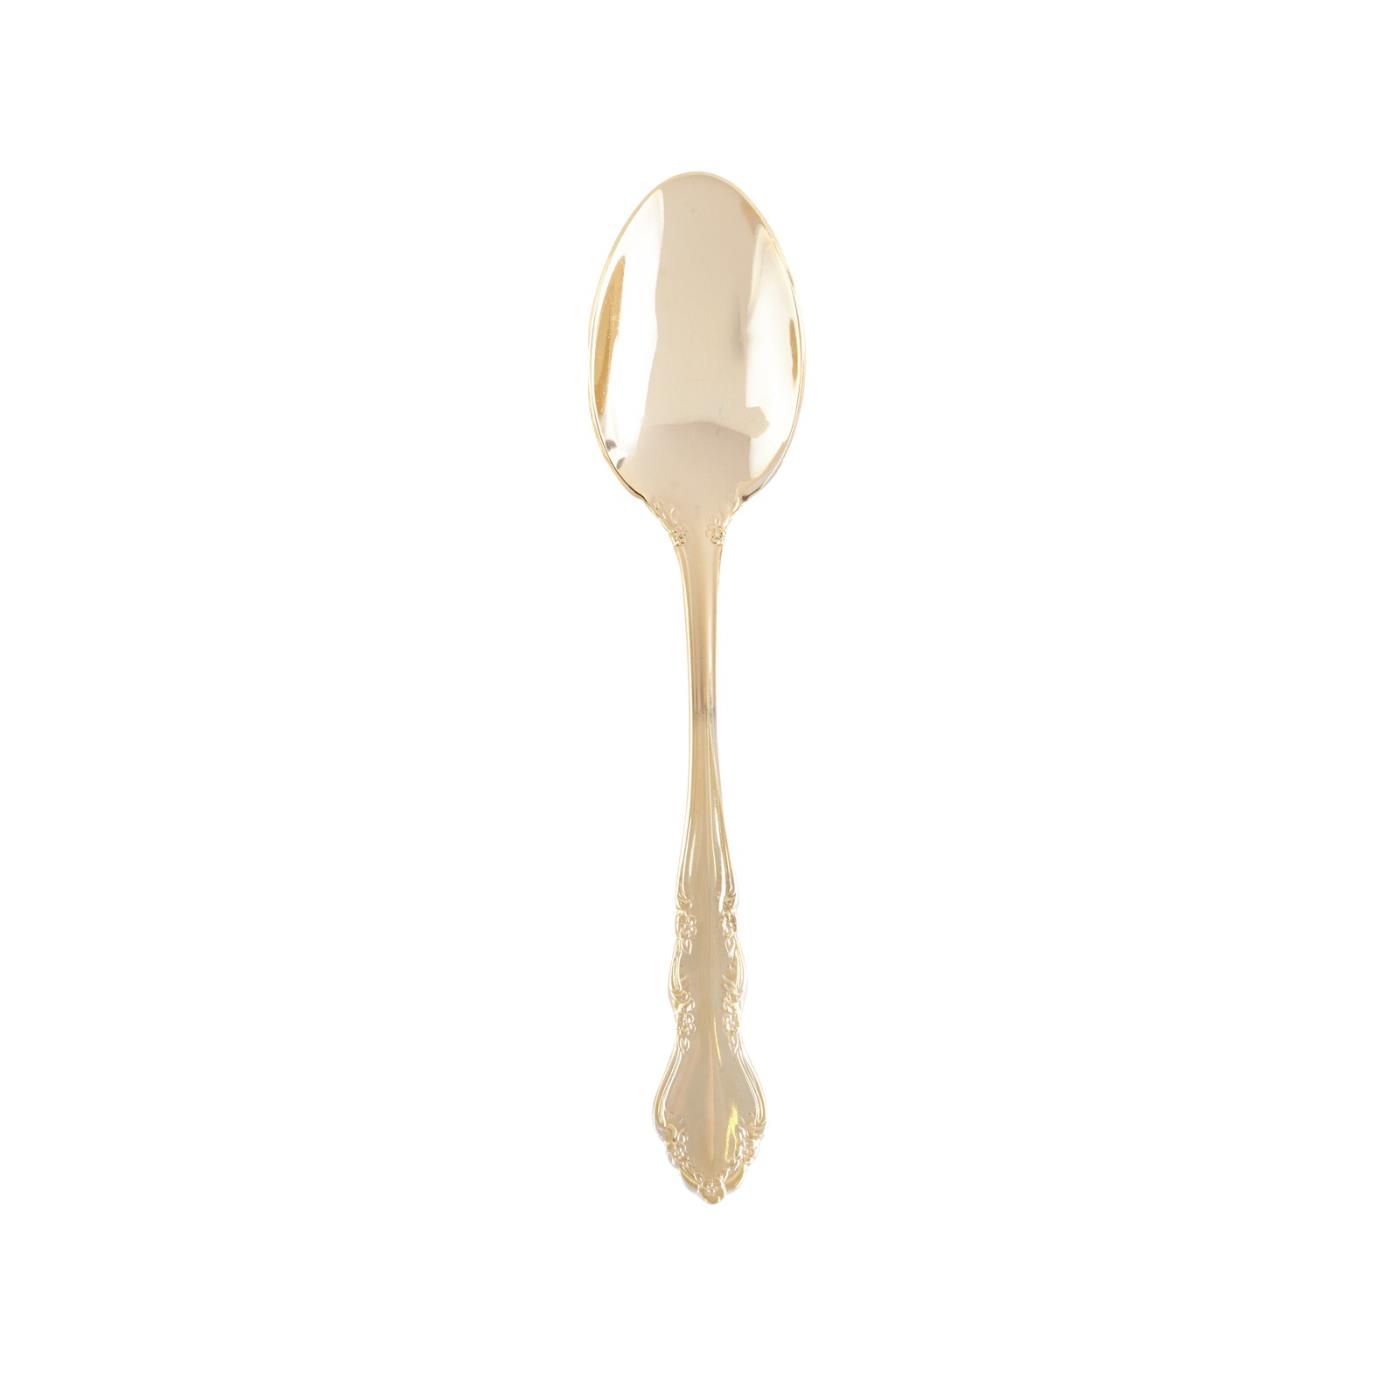 Alexandra Gold - Soup / Dessert Spoon